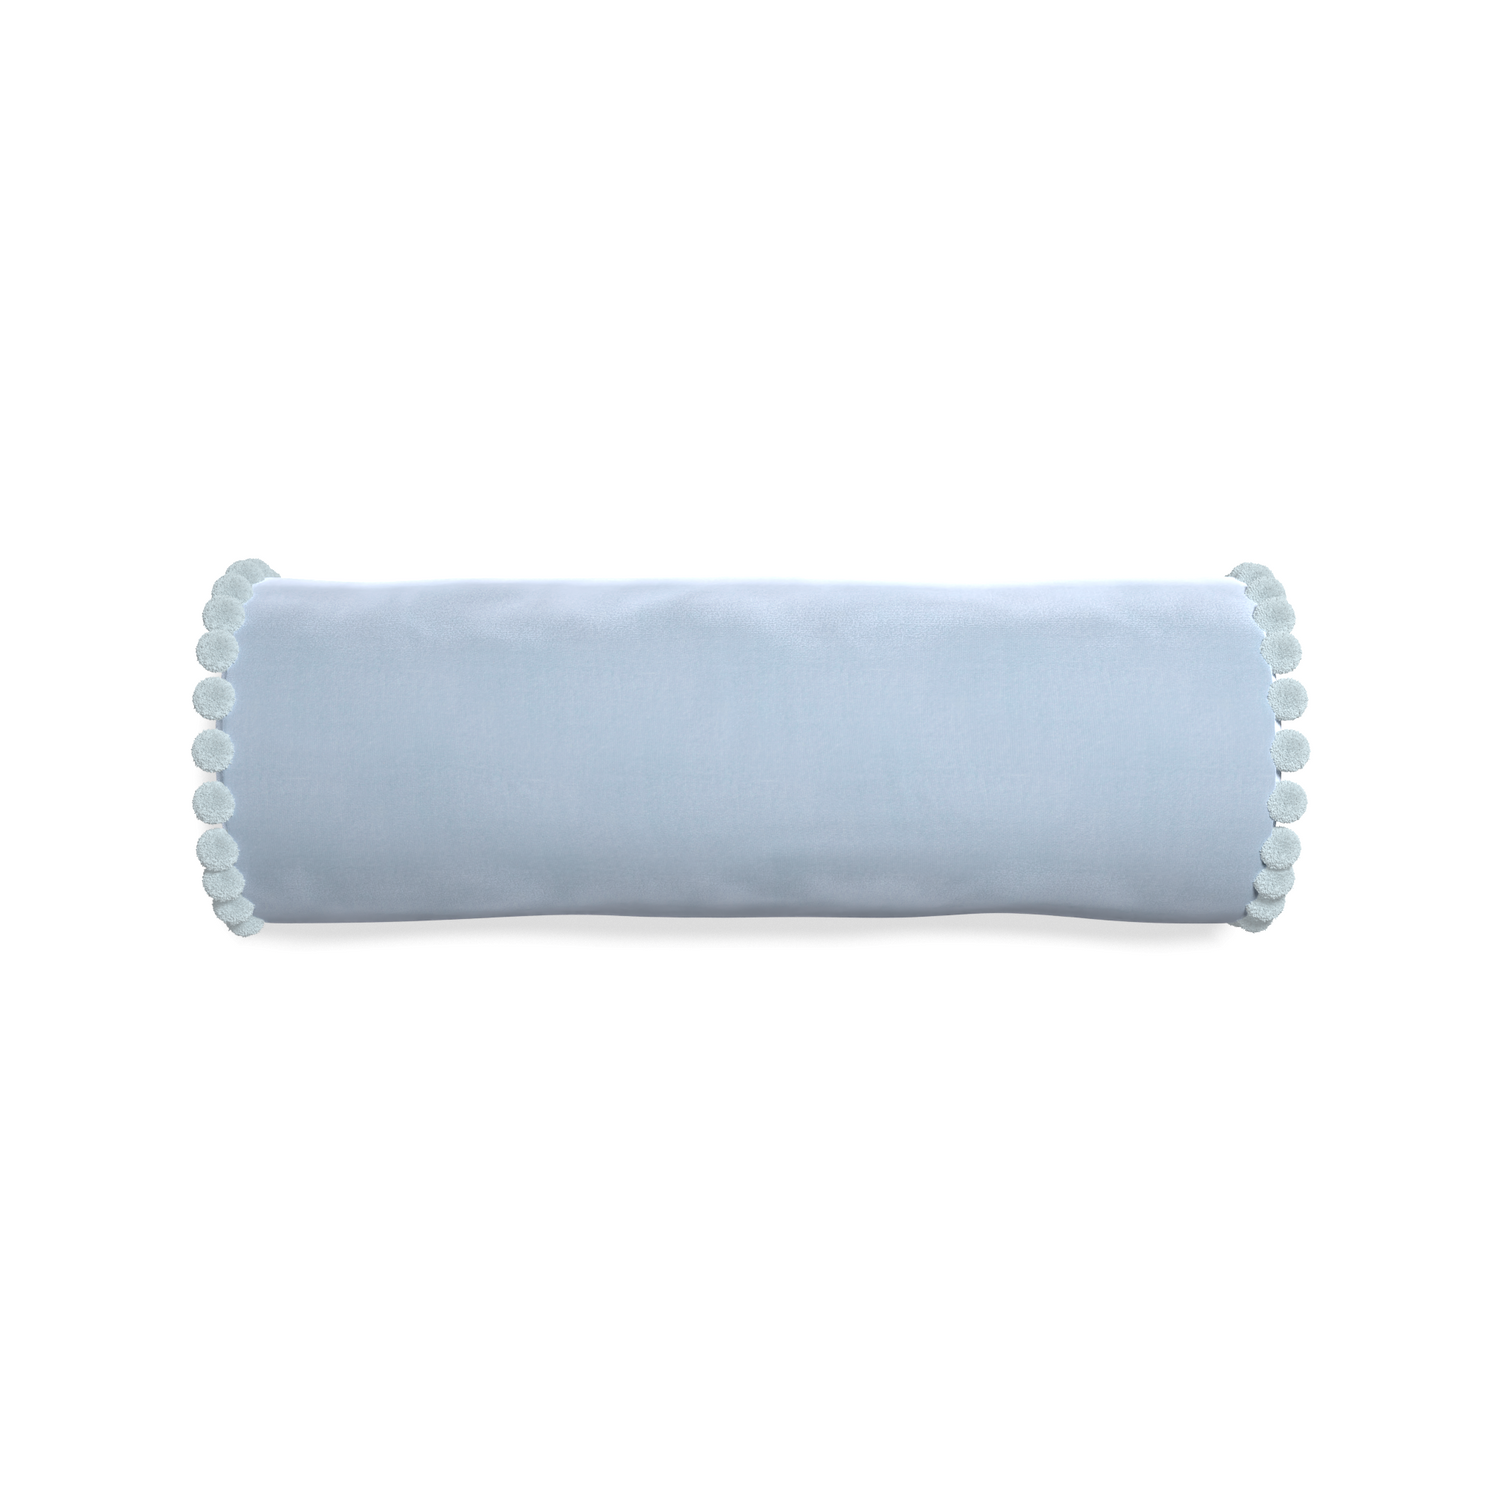 Bolster sky velvet custom pillow with powder pom pom on white background